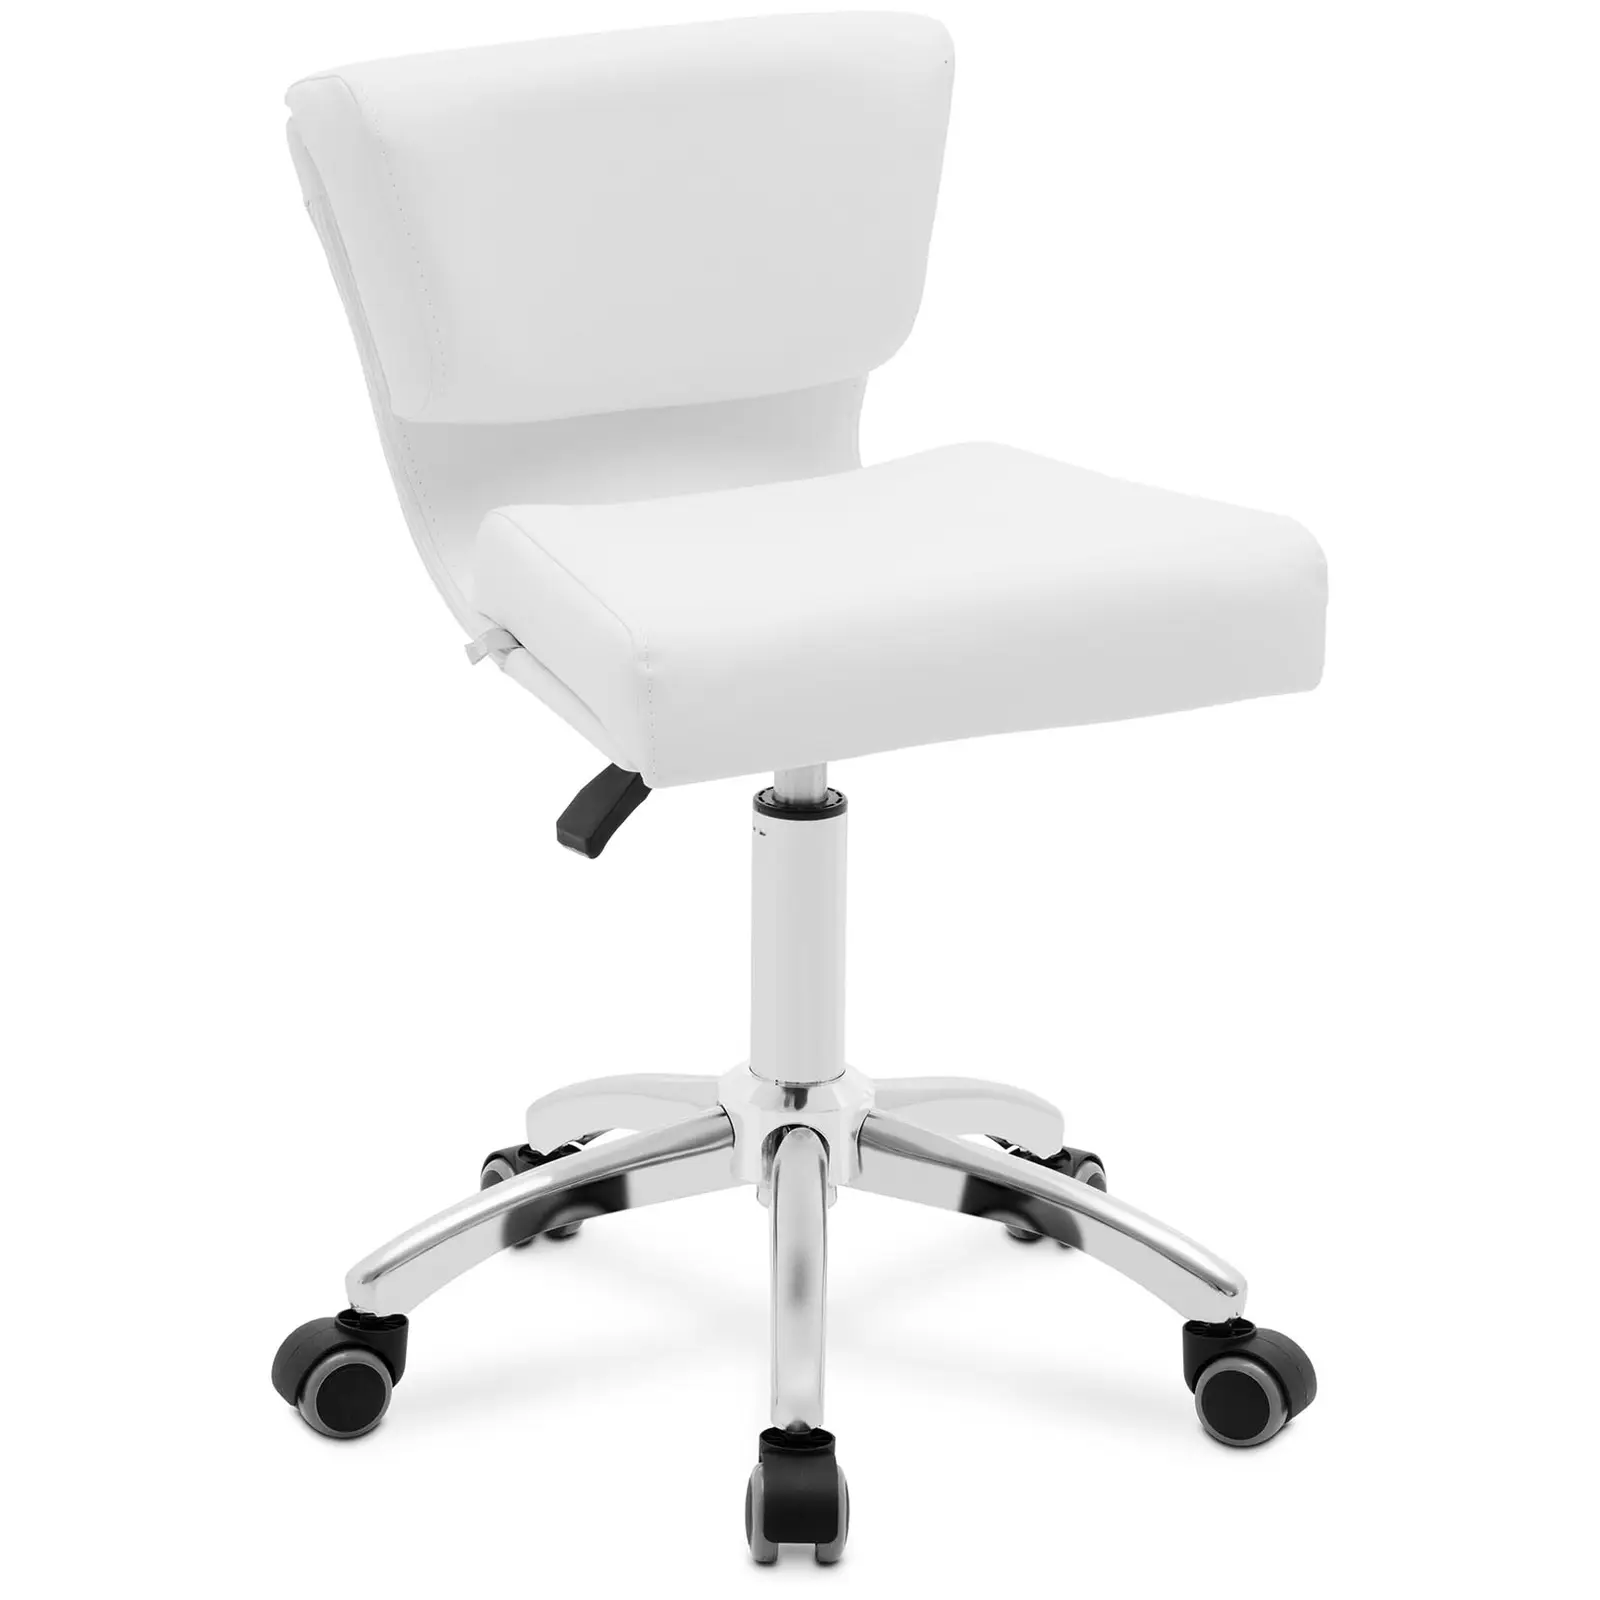 Cadeira para salão de beleza - 47 - 61 cm - 150 kg - branco